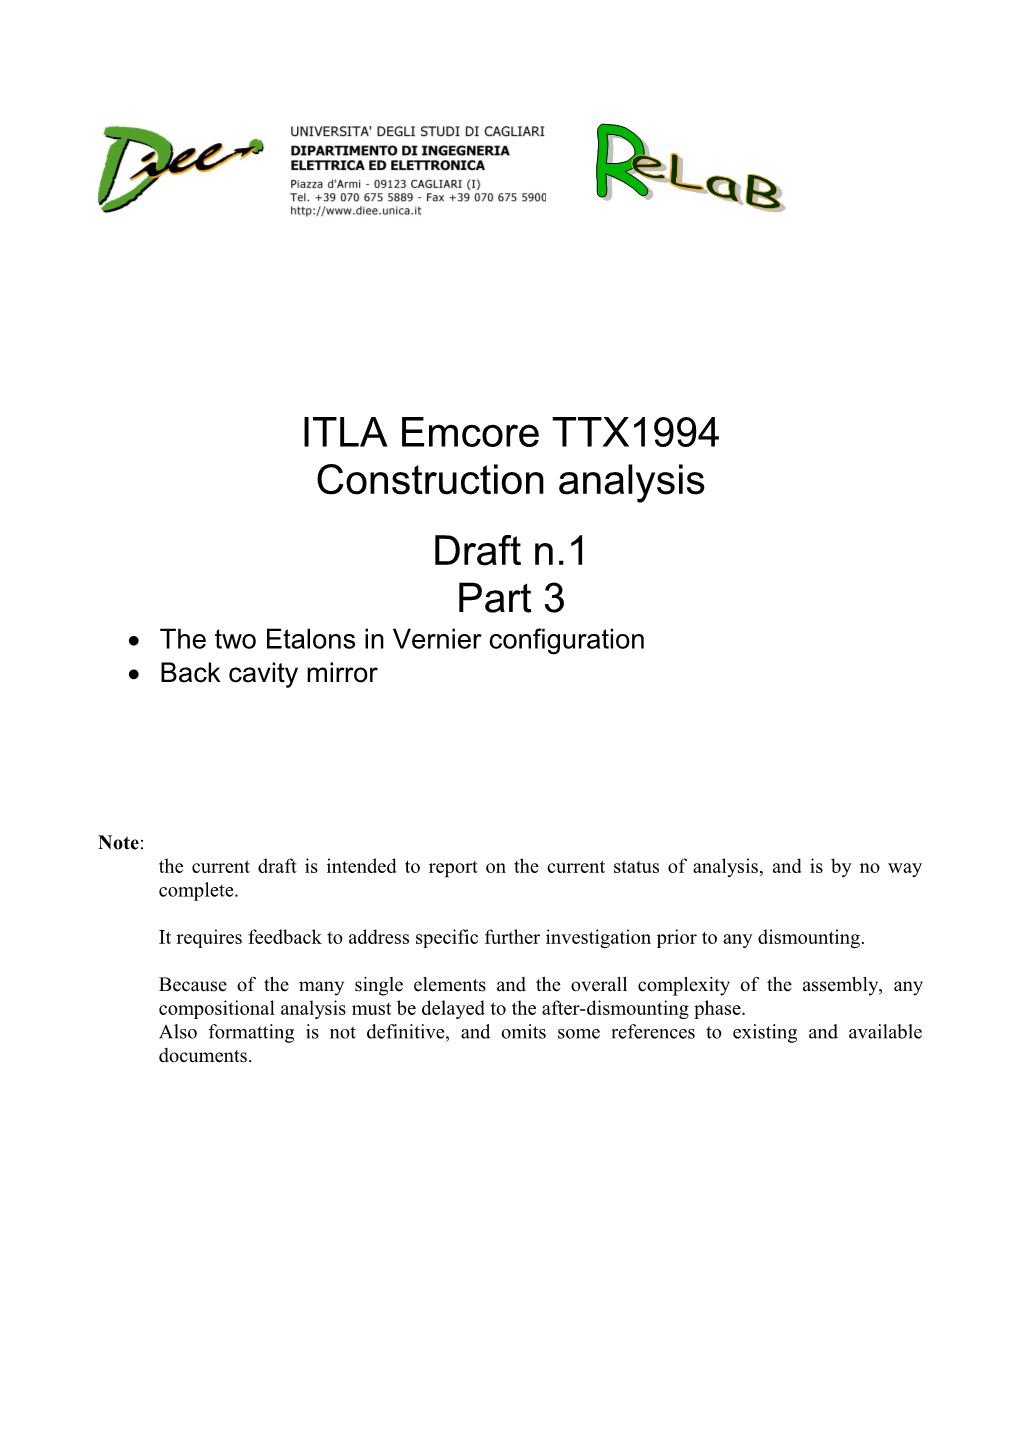 ITLA Emcore TTX1994